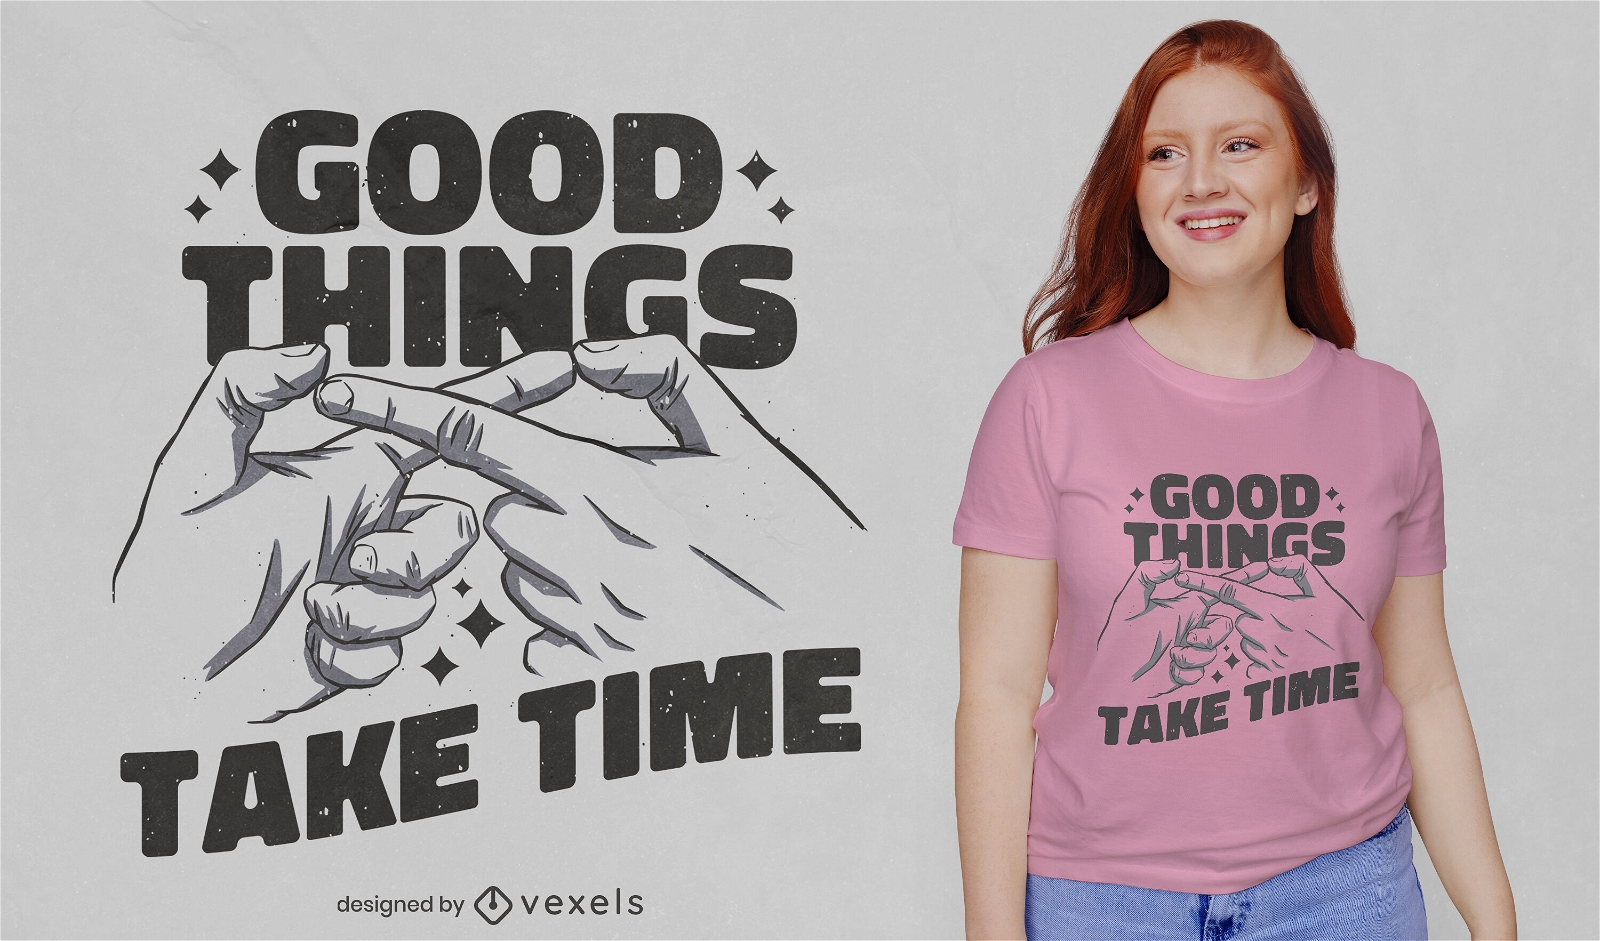 Las cosas buenas toman tiempo dise?o de camiseta de cita